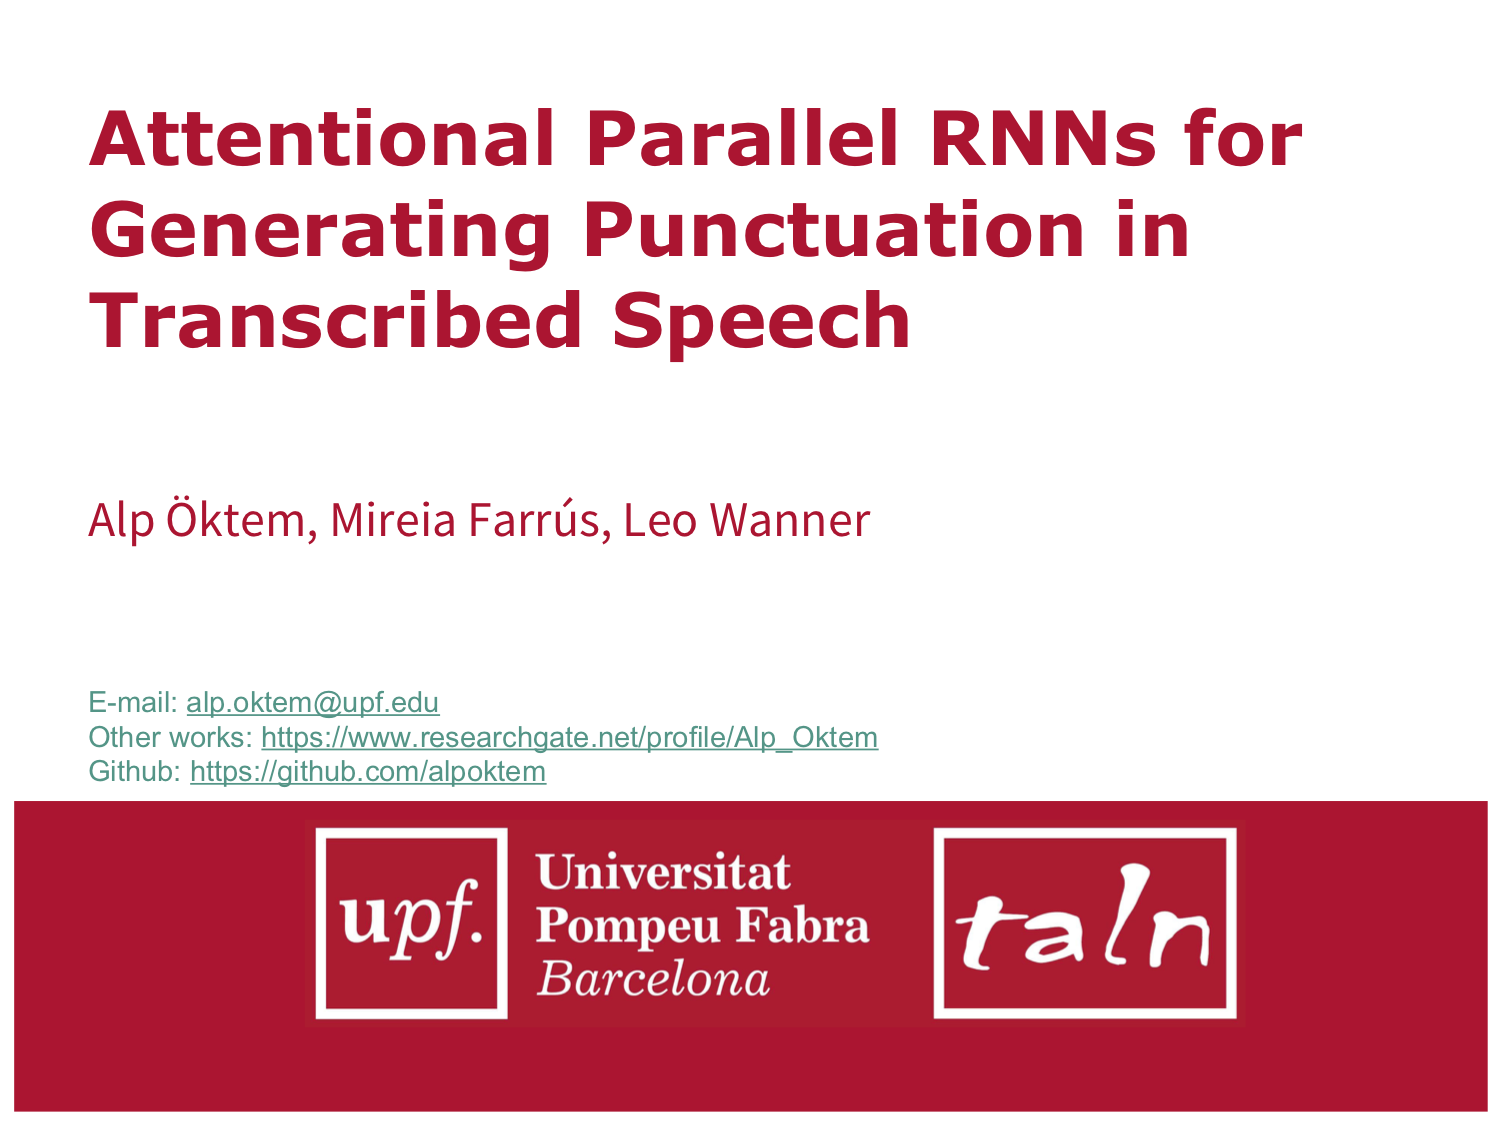 Alp Öktem's SLSP 2017 presentation - Attentional Parallel RNNs for Generating Punctuation in Transcribed Speech